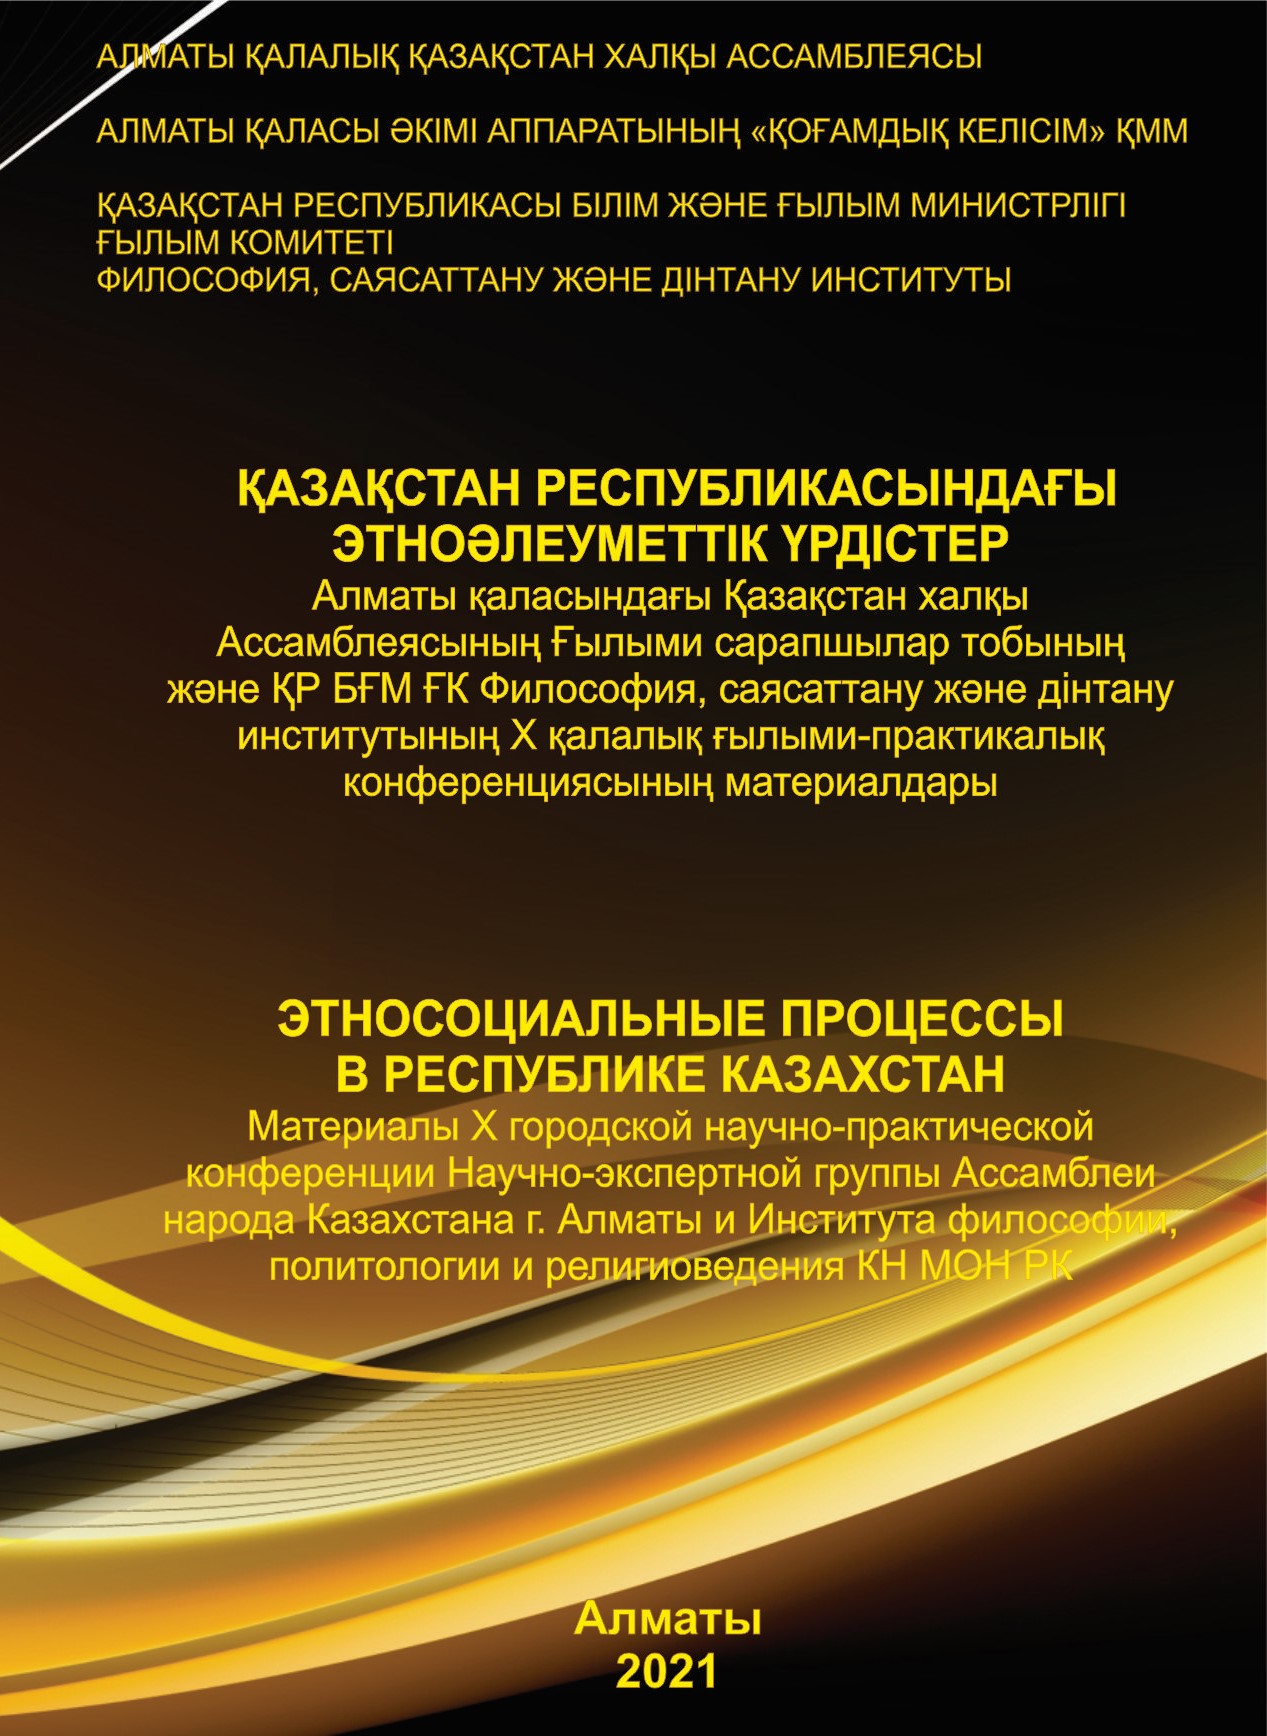 Этносоциальные процессы в Республике Казахстан. Часть 1